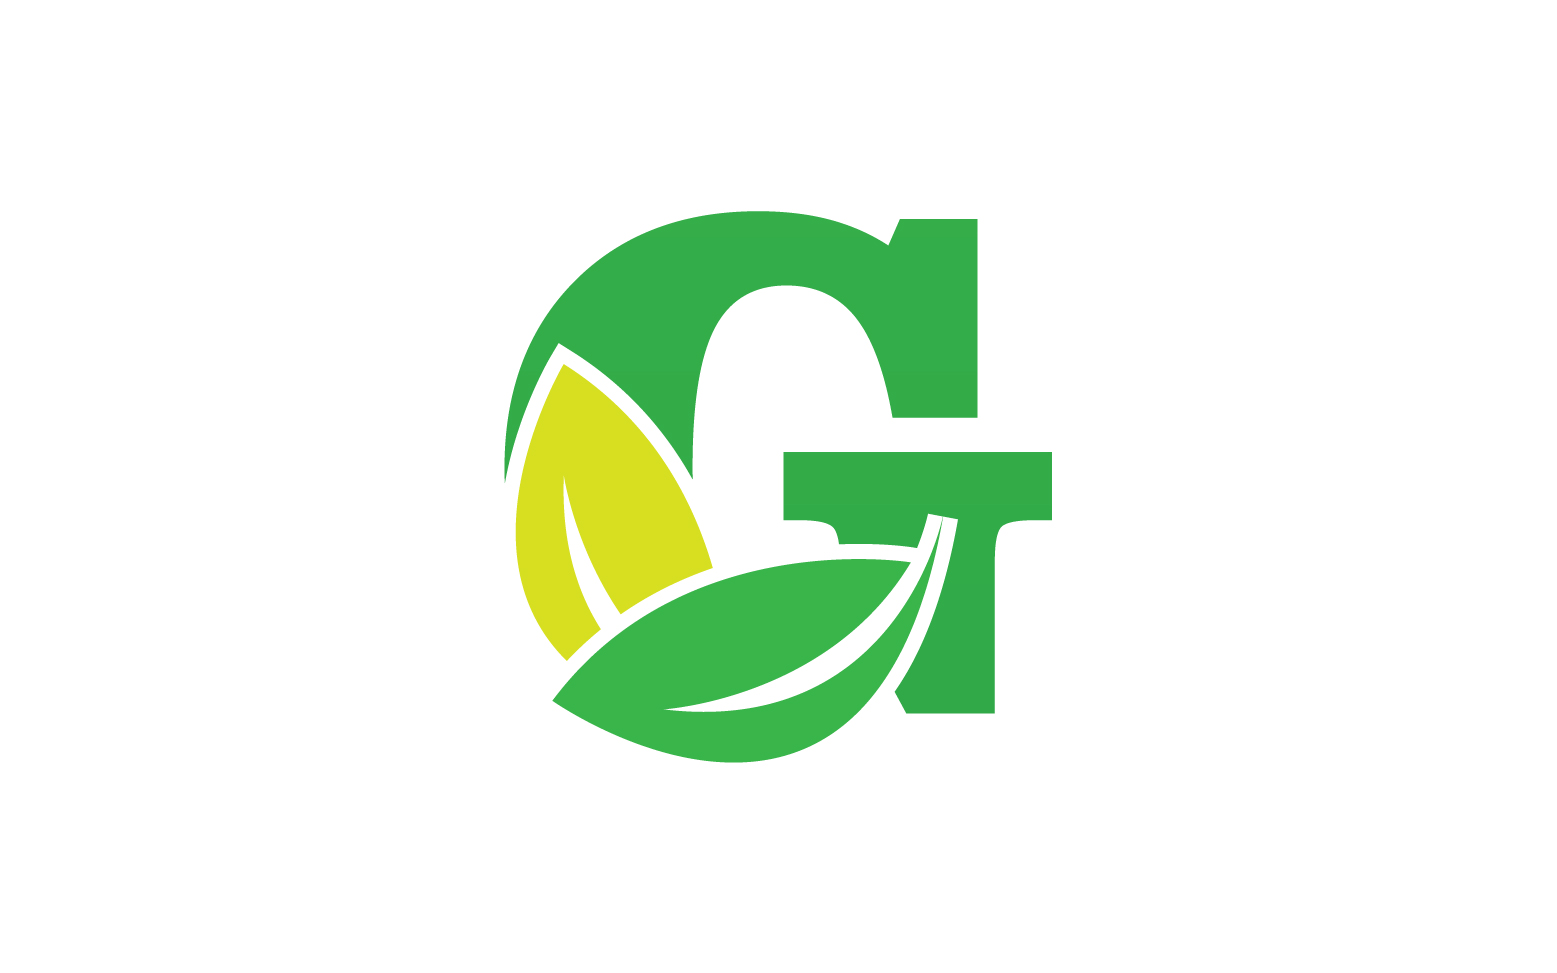 G letter leaf green logo icon version v40